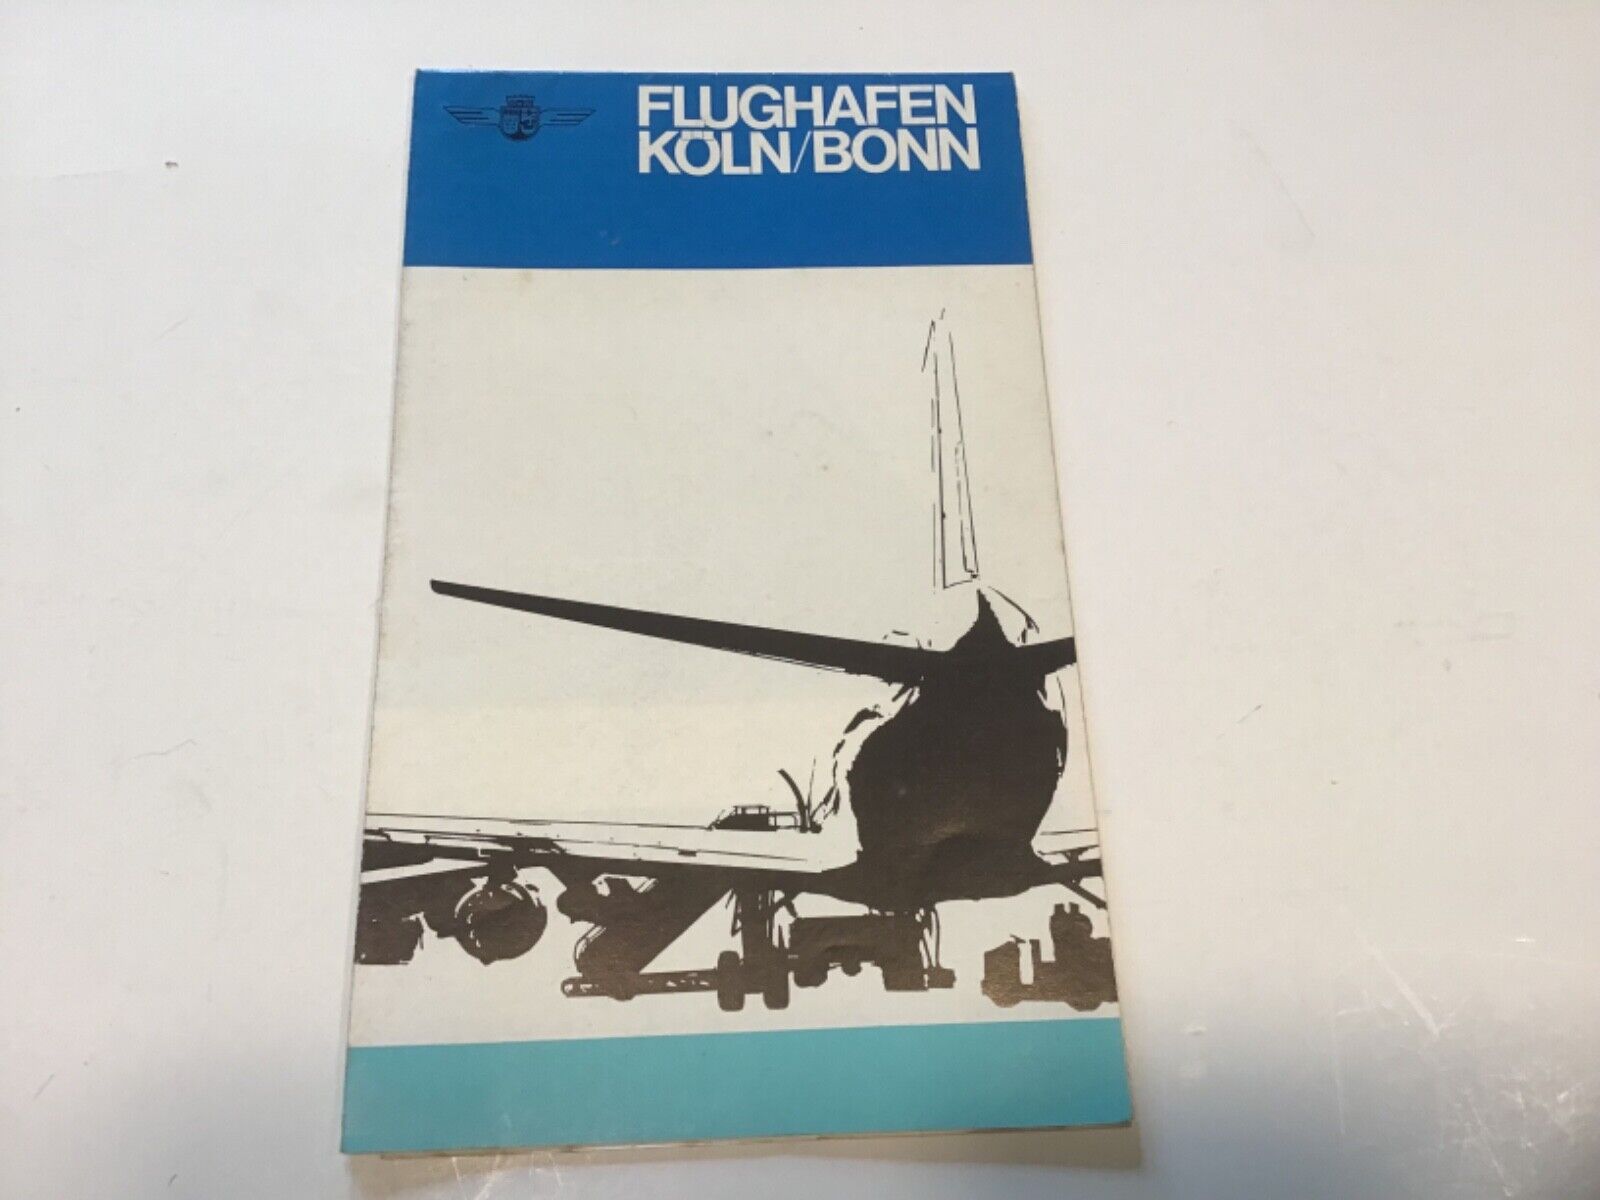 Flughafen Köln/Bonn, Airport Brochure, 1967, German